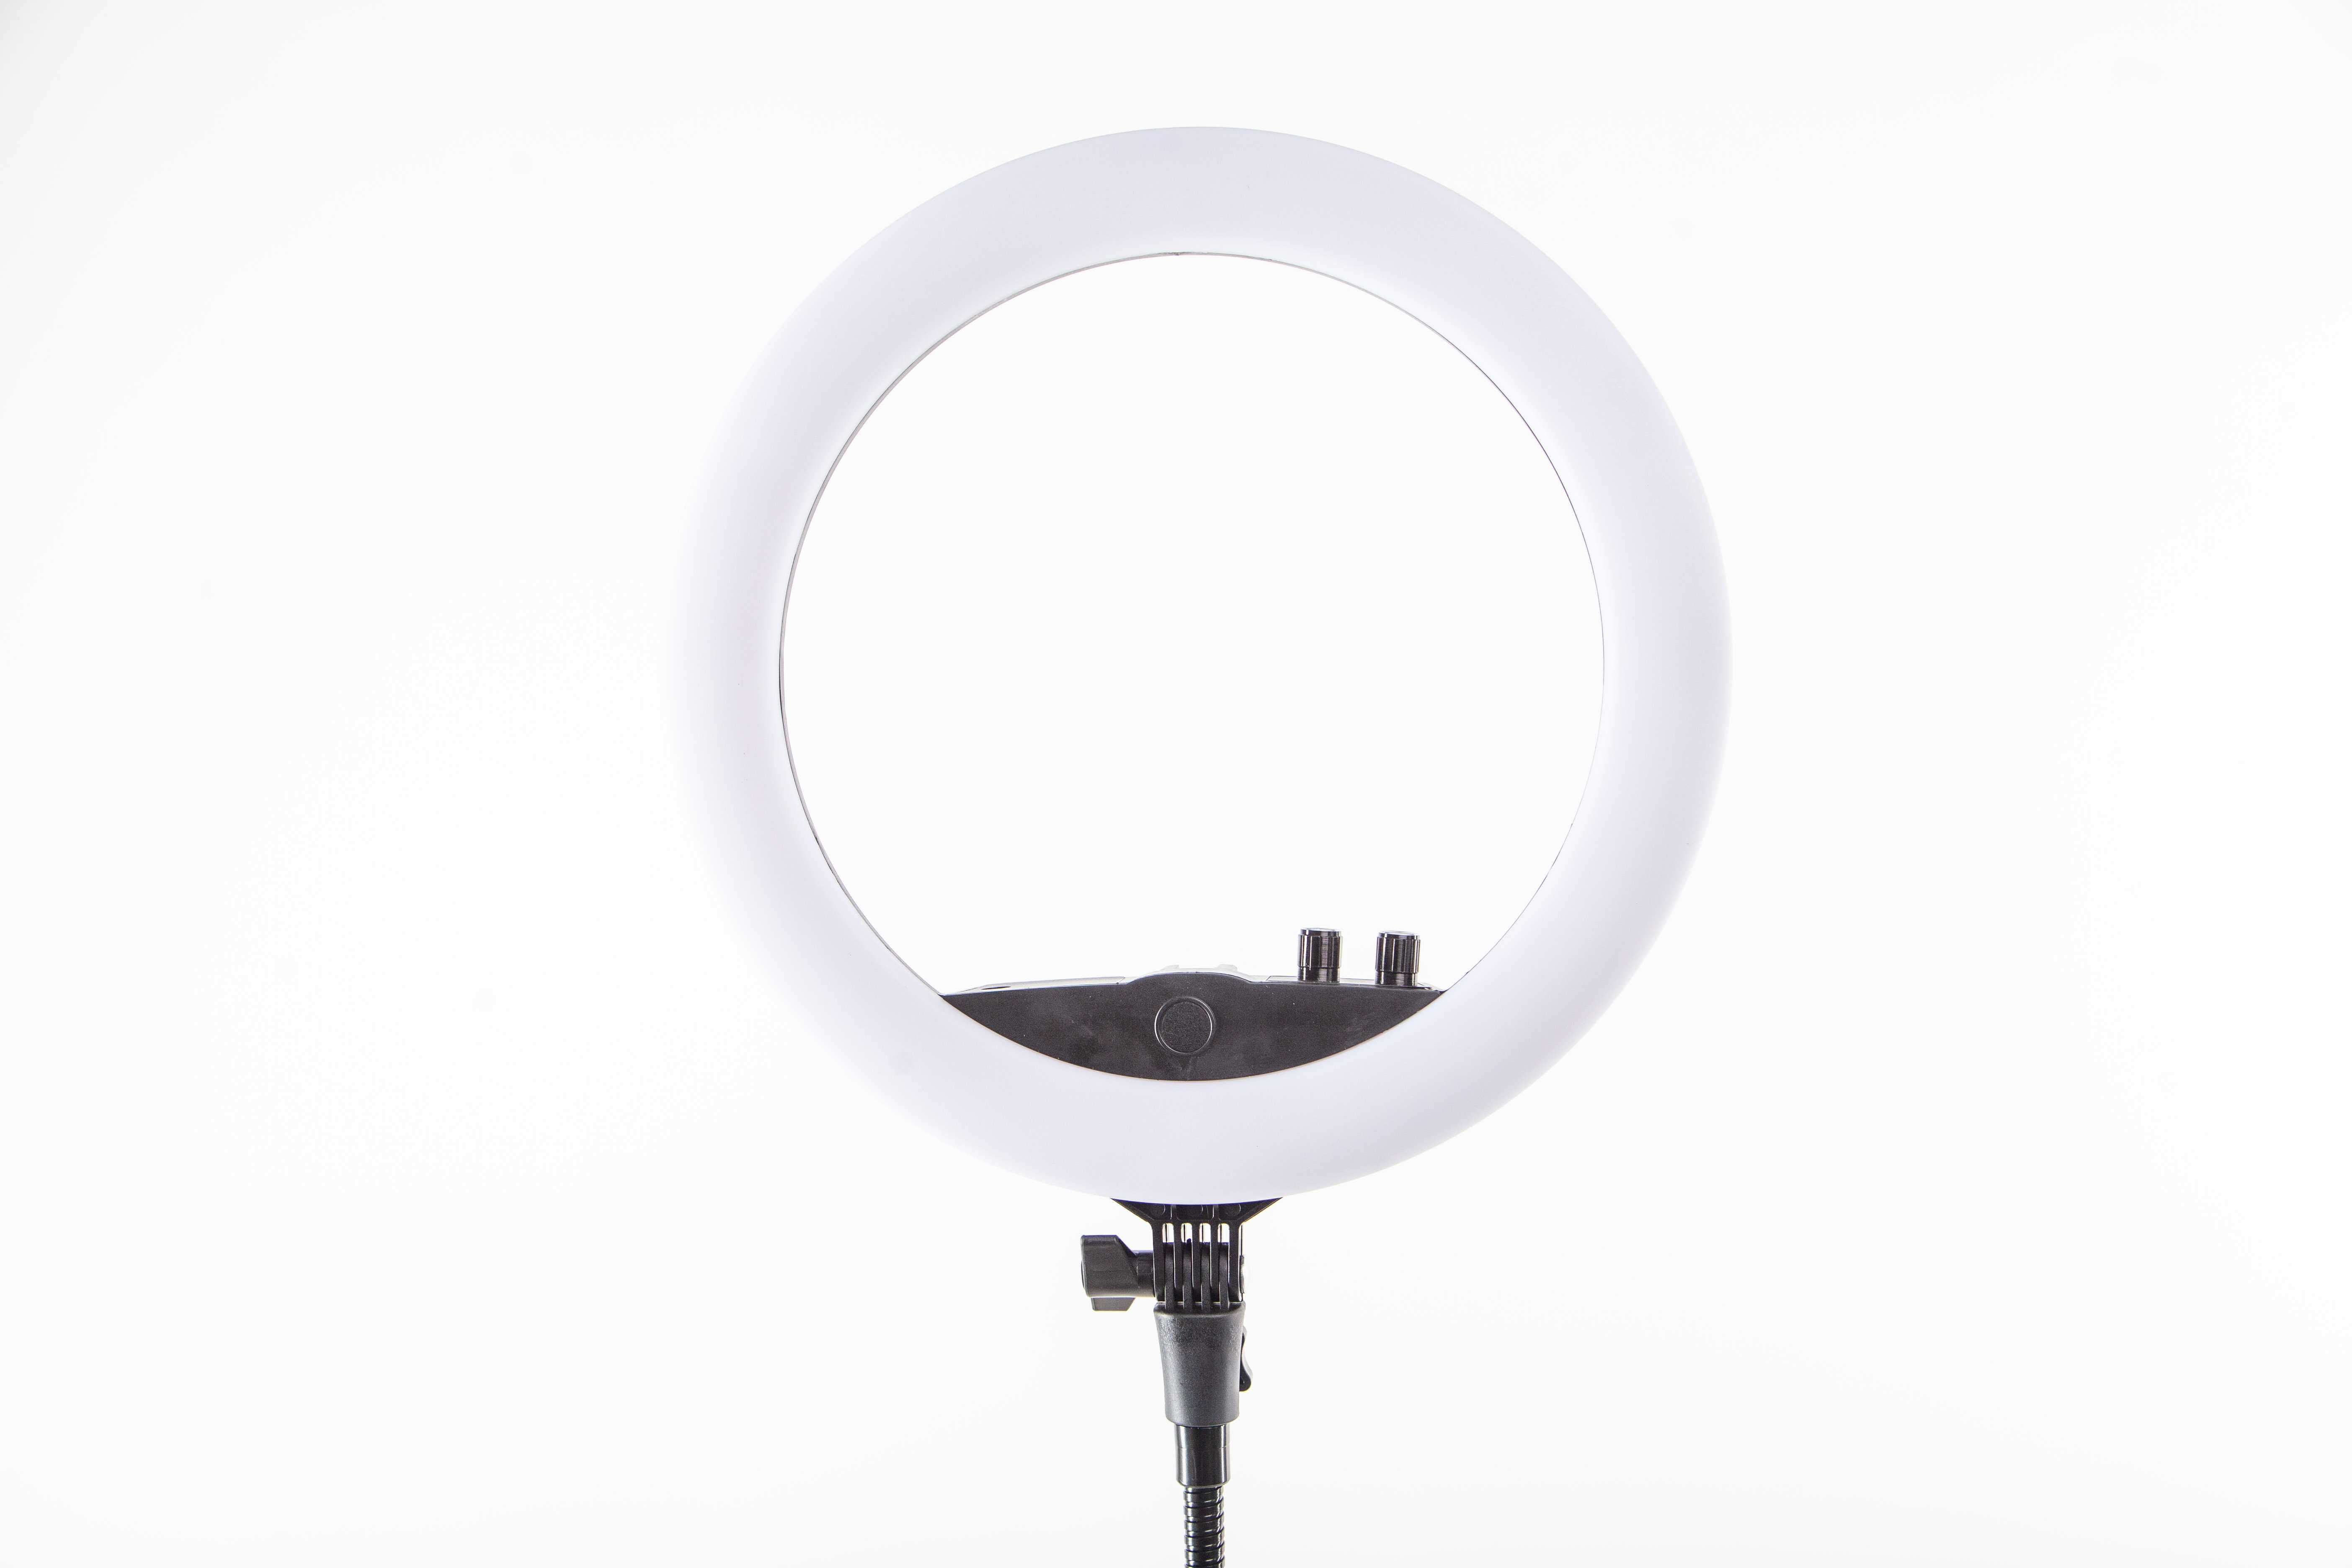 Кільцева лампа кольцо LUMERTY Slim 35см-45w, світло для фото, блогерів